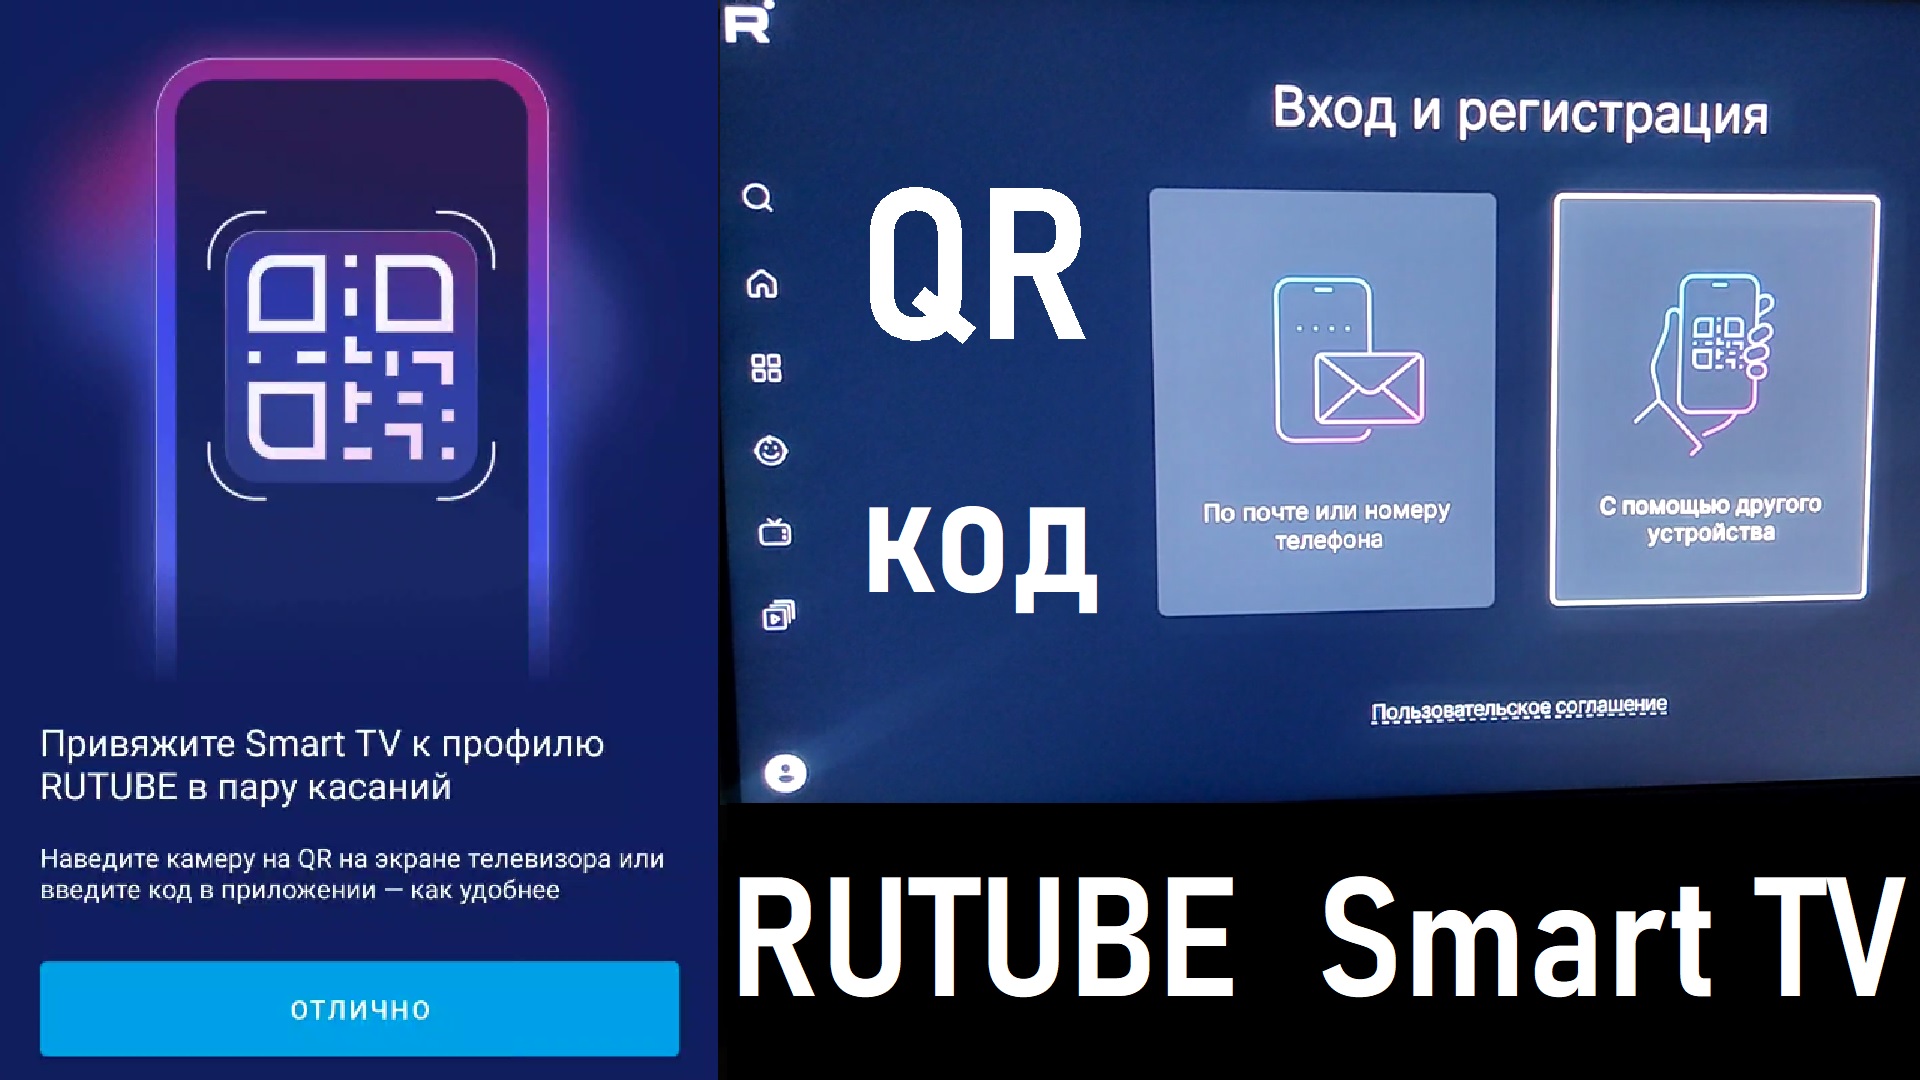 QR код для RUTUBE Smart TV | Как привязать Smart TV к Rutube за пару касаний с помощью QR кода?